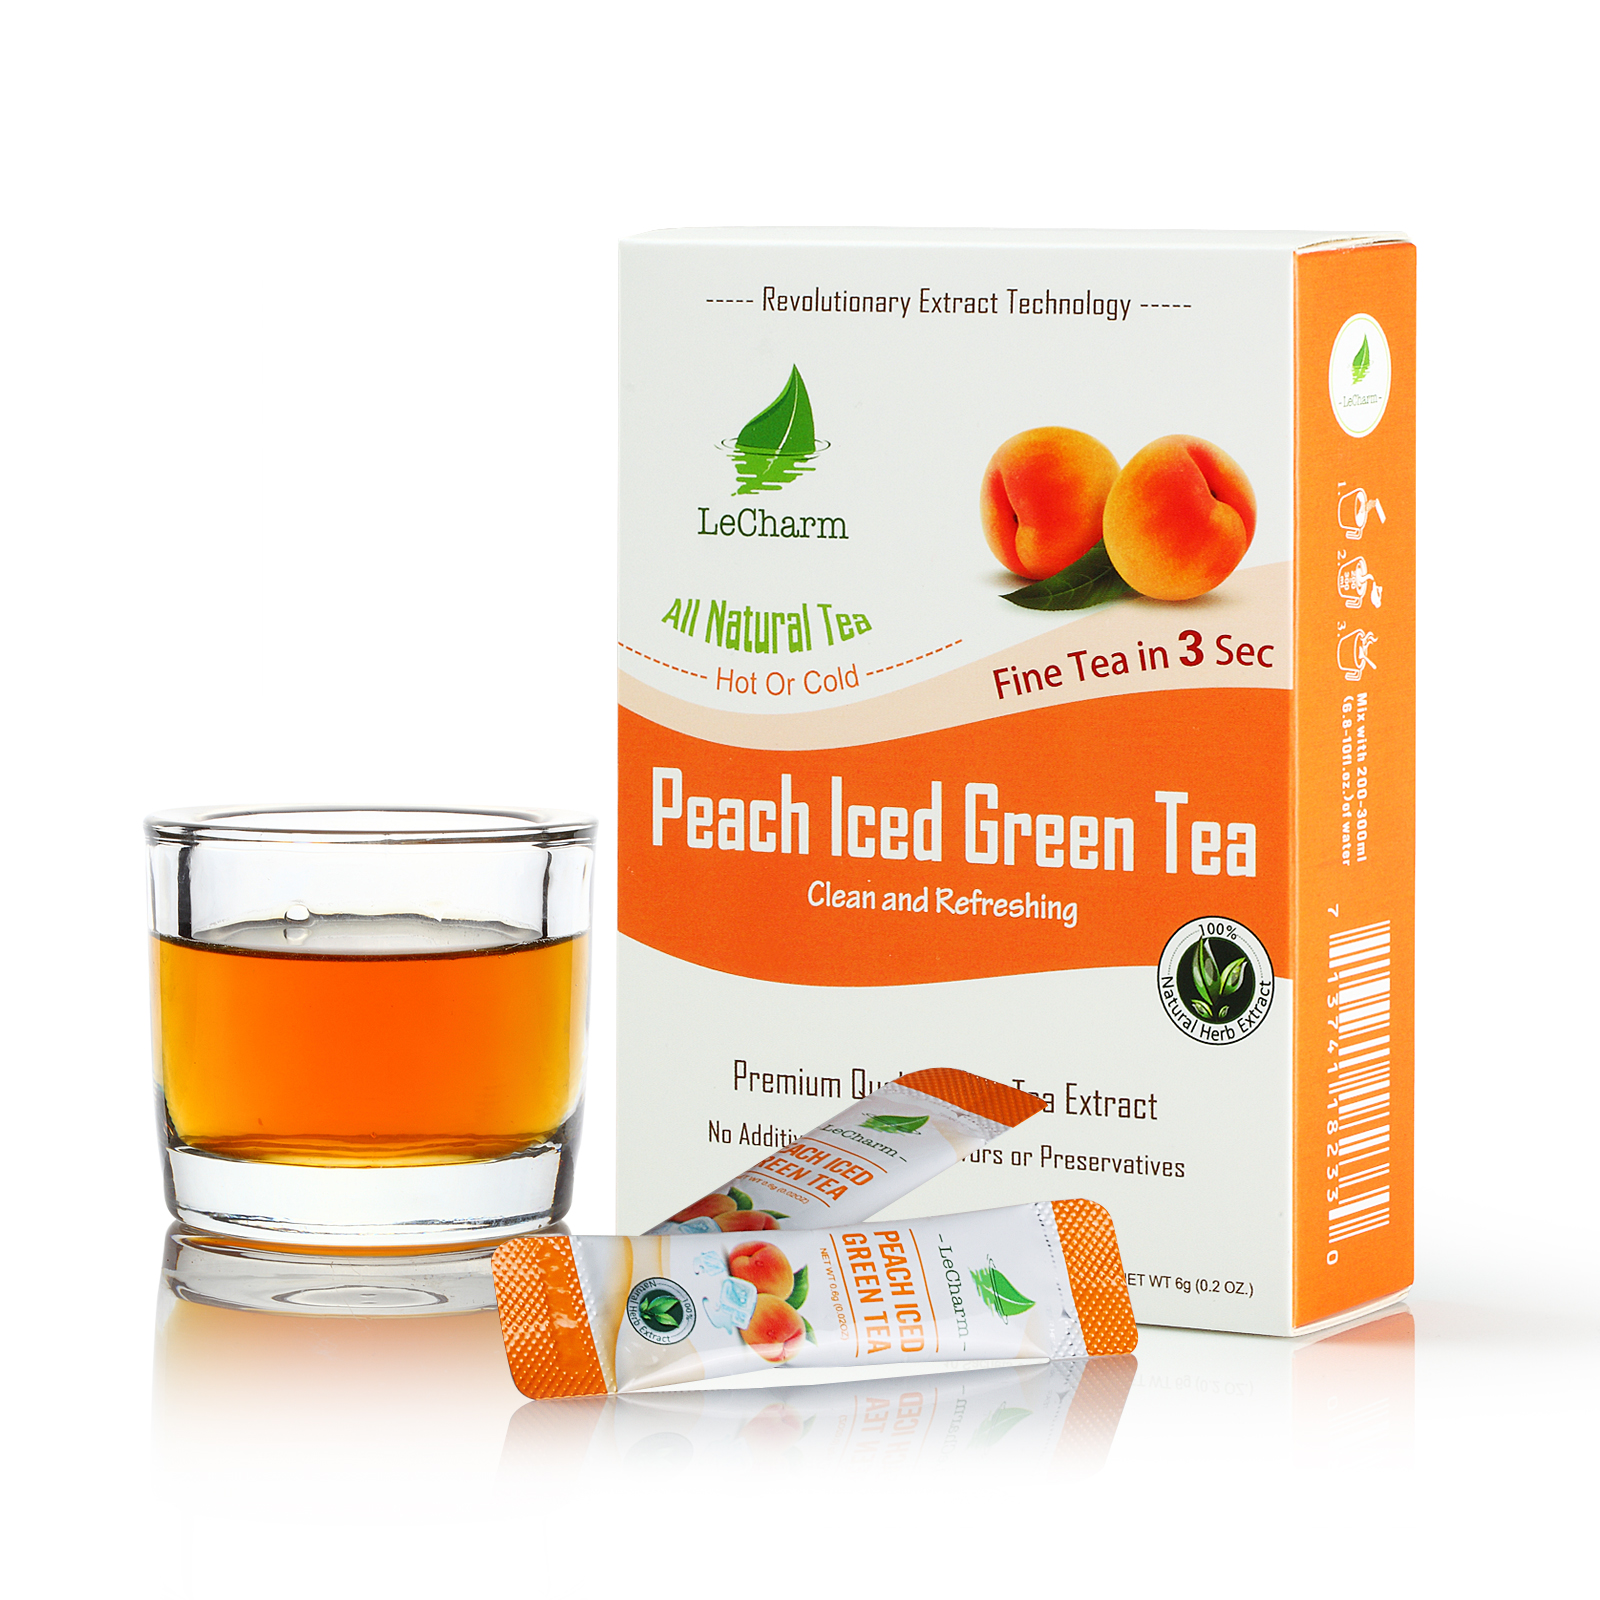 Cusa Tea - Peach Green Tea